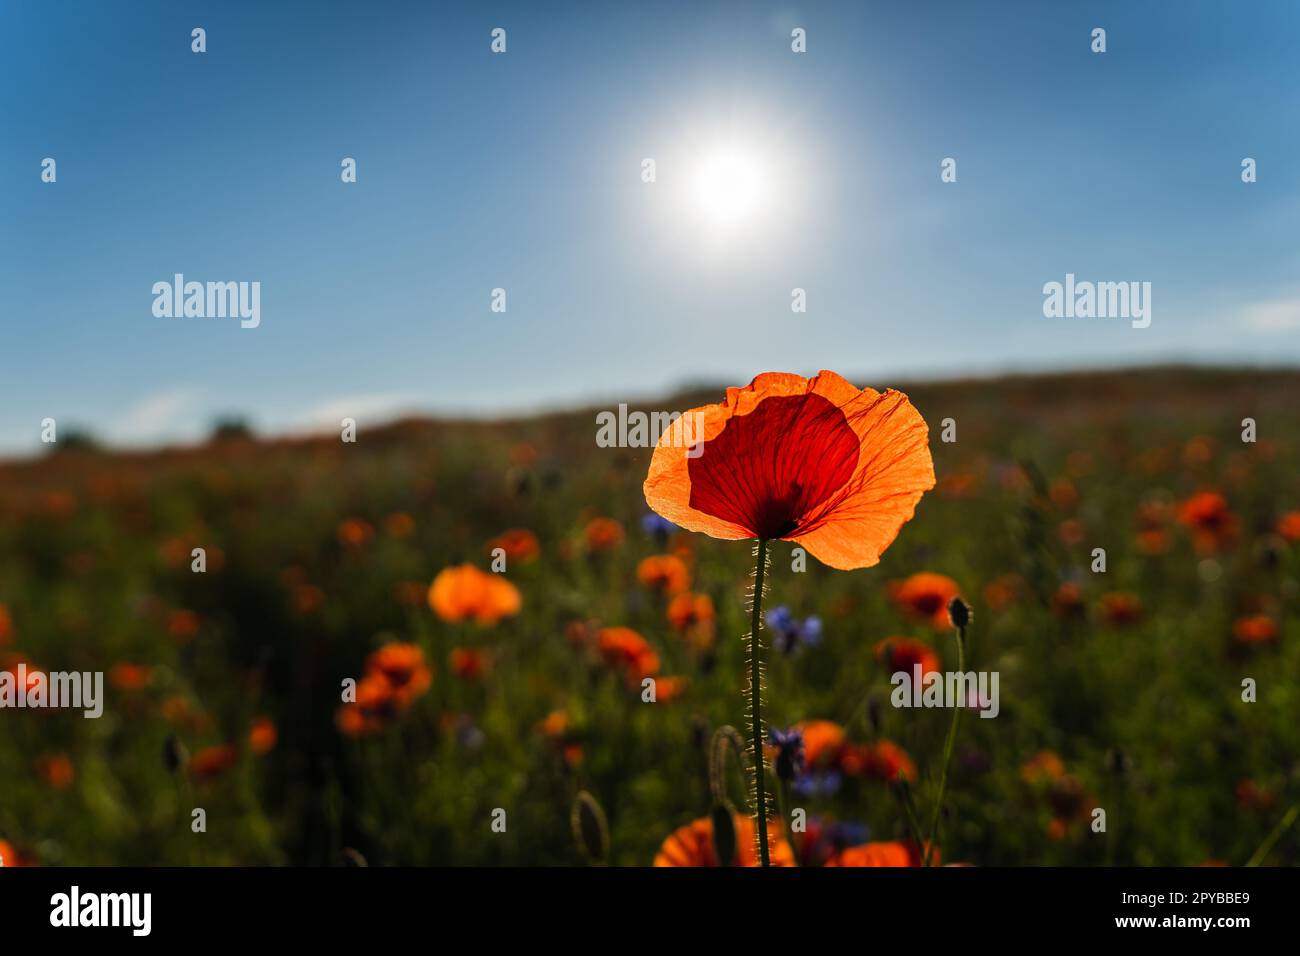 Leuchtend rote Feldmohnblume auf einem Feld im Sonnenlicht Stockfoto